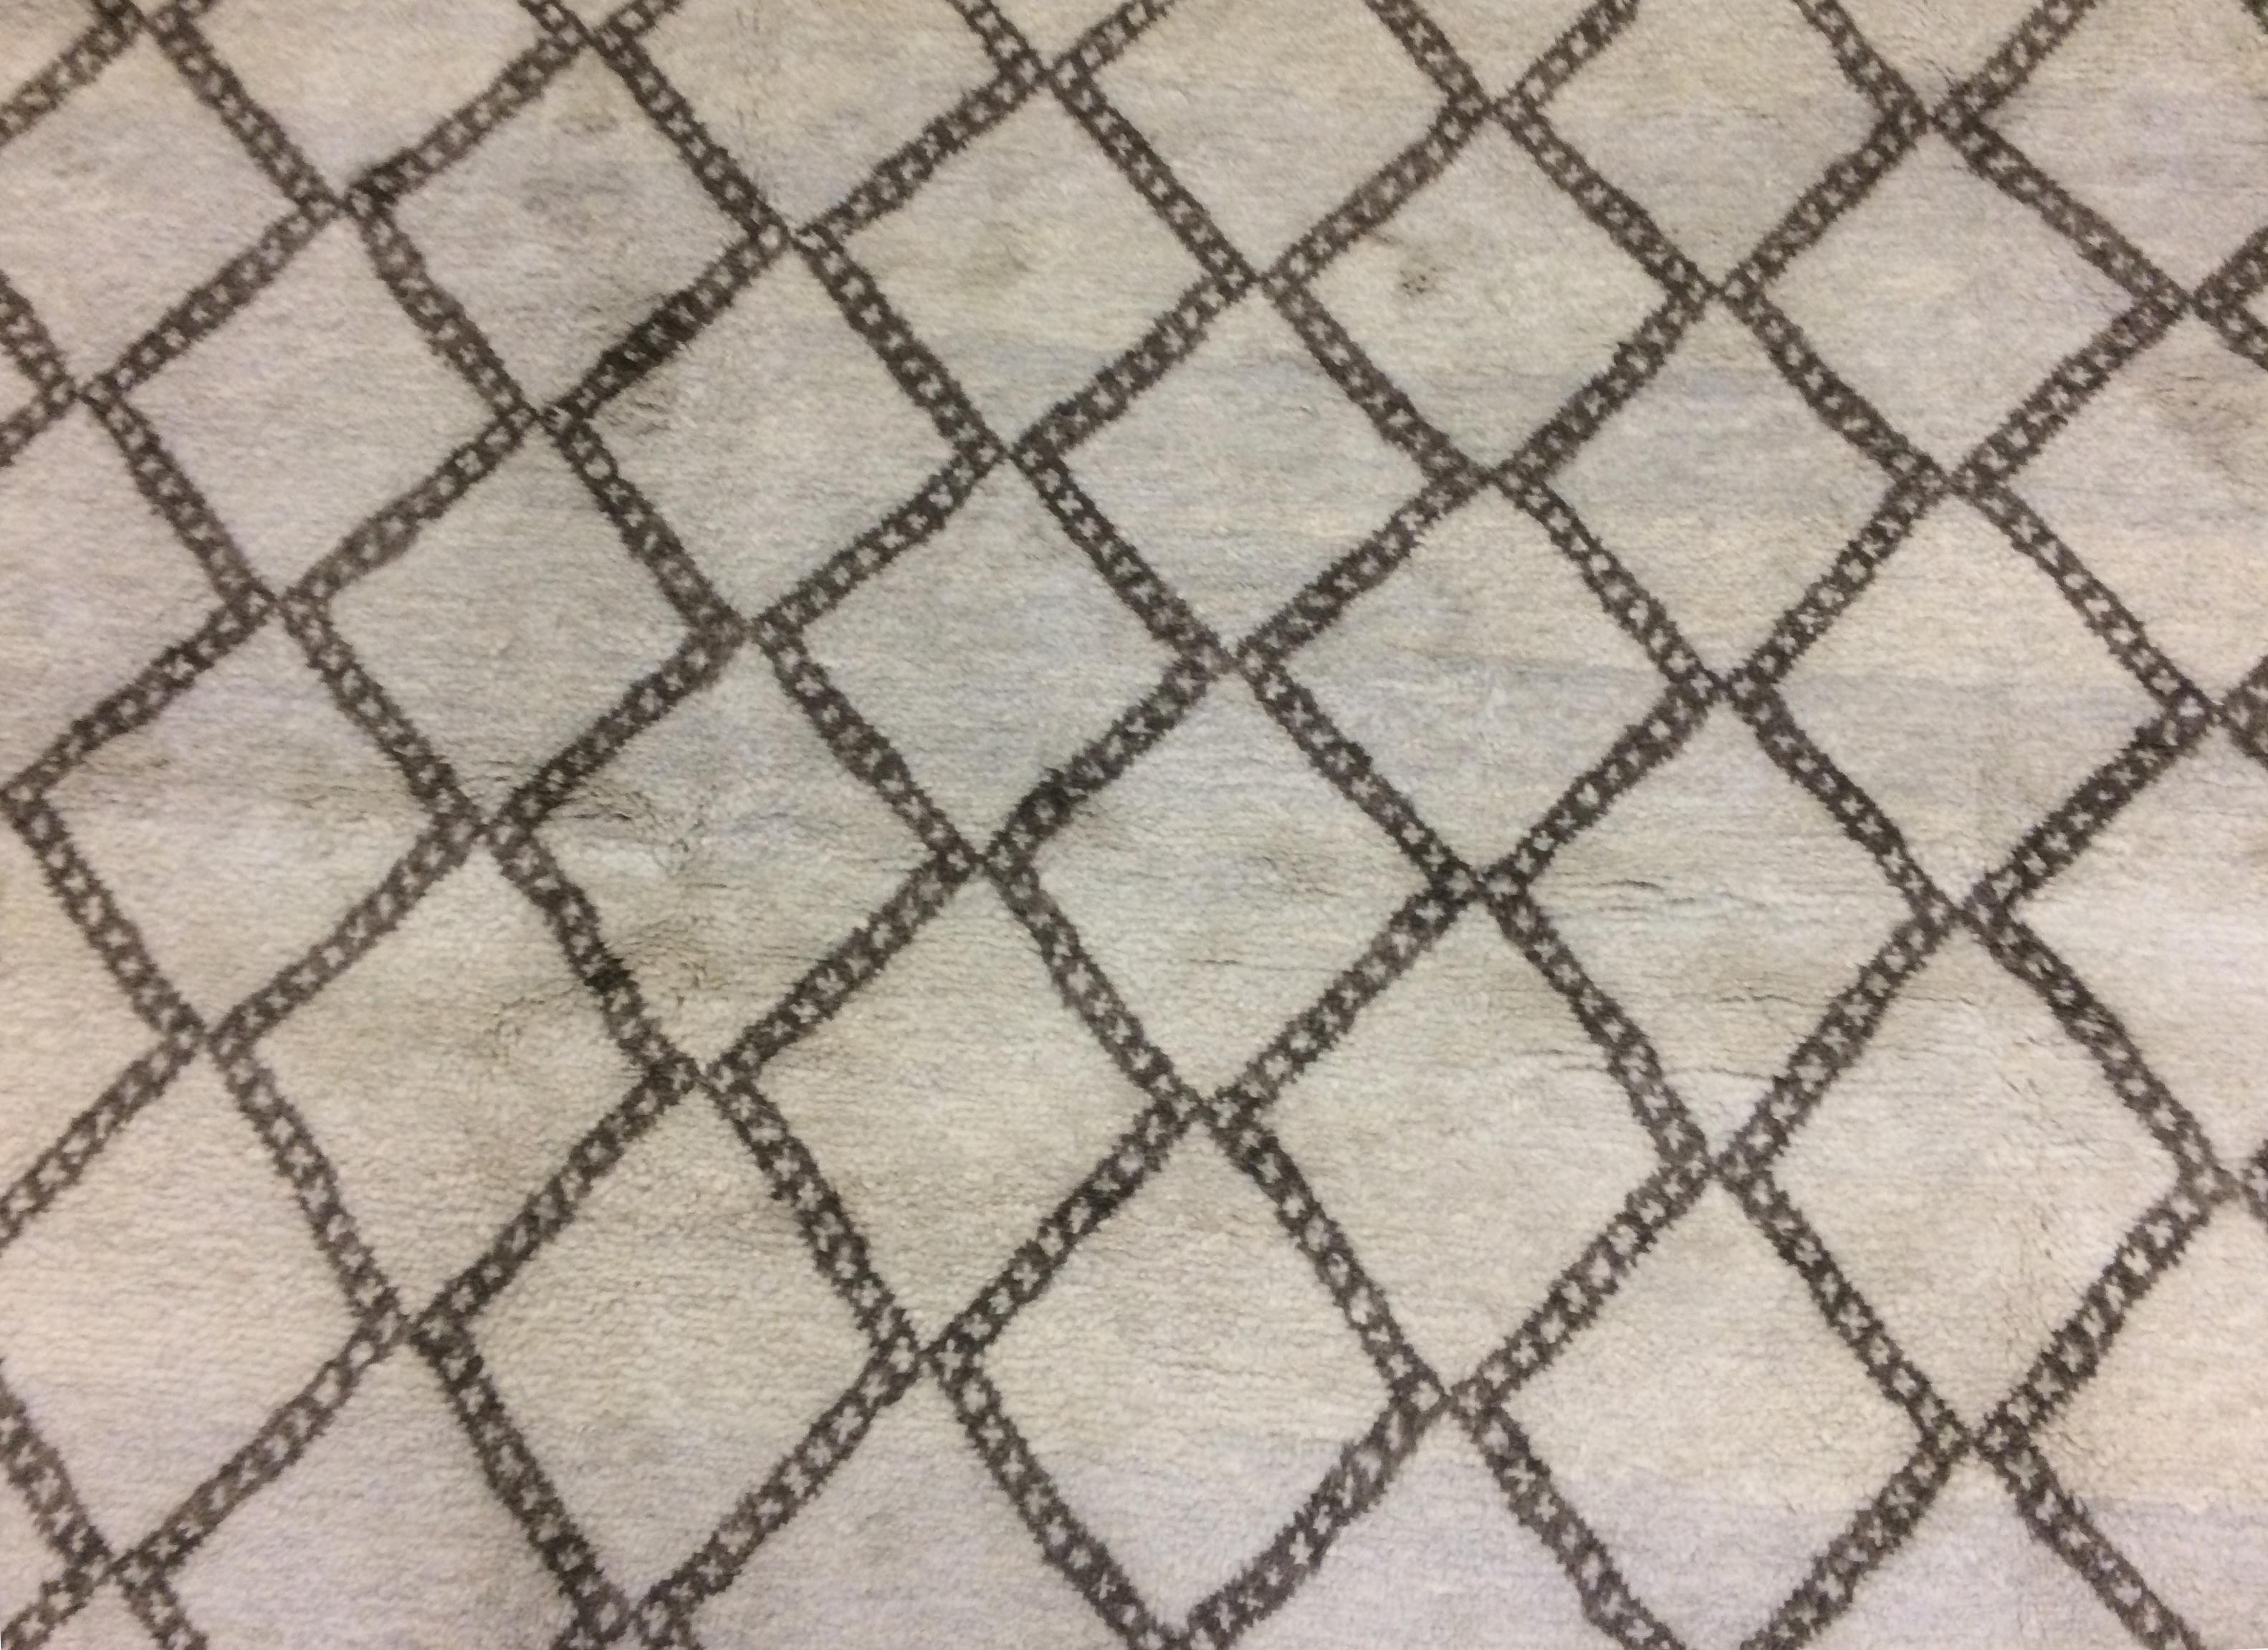 Modern Moroccan rug with bold diamond design,

circa 2015.

Measures: 8' 3